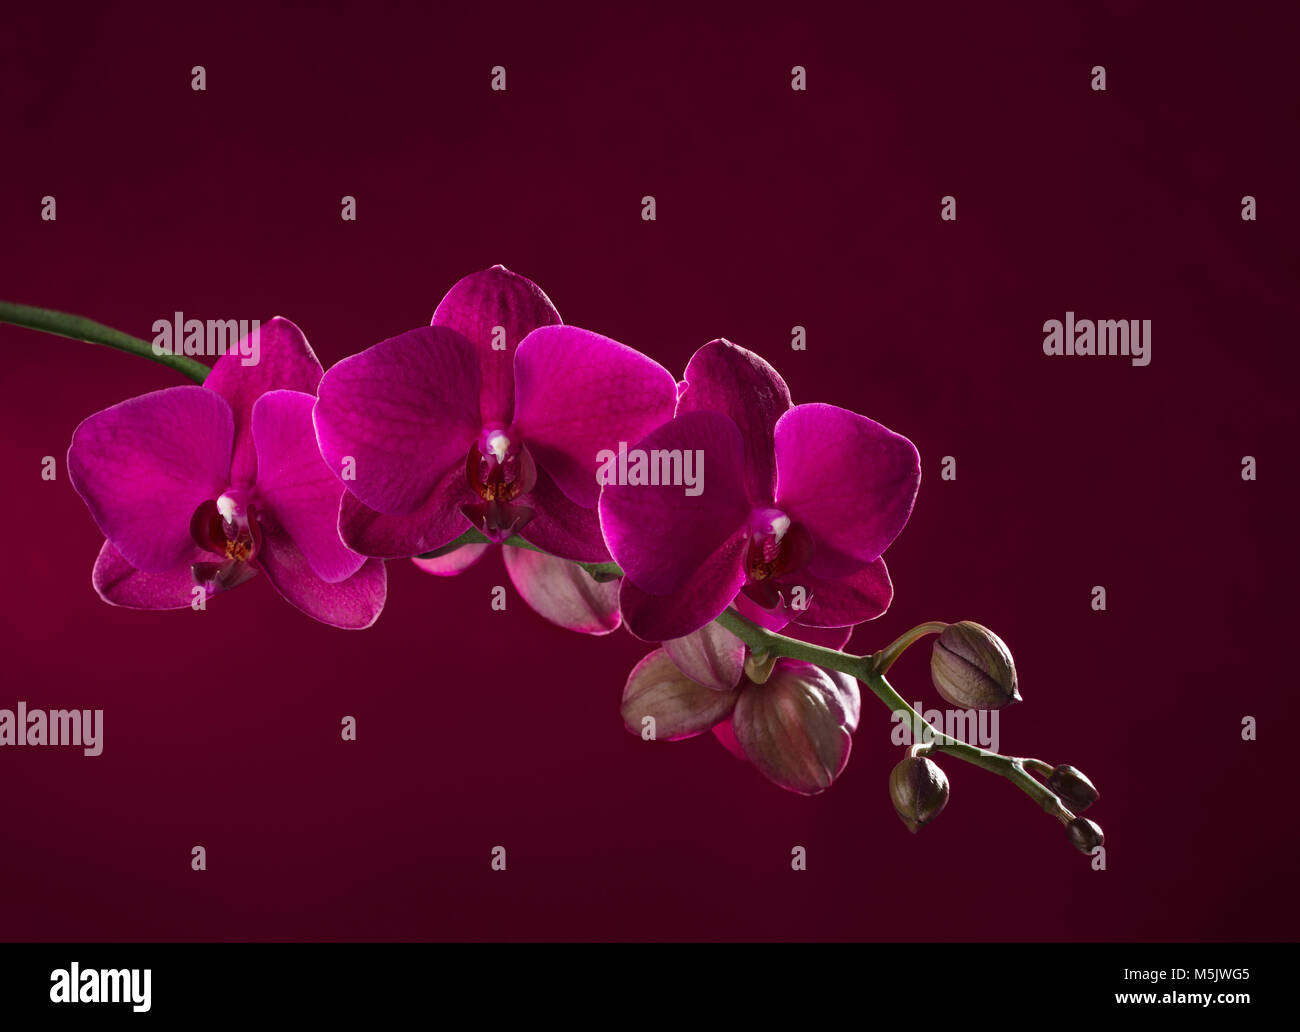 Rosa scuro orchid su sfondo vinosa Foto Stock